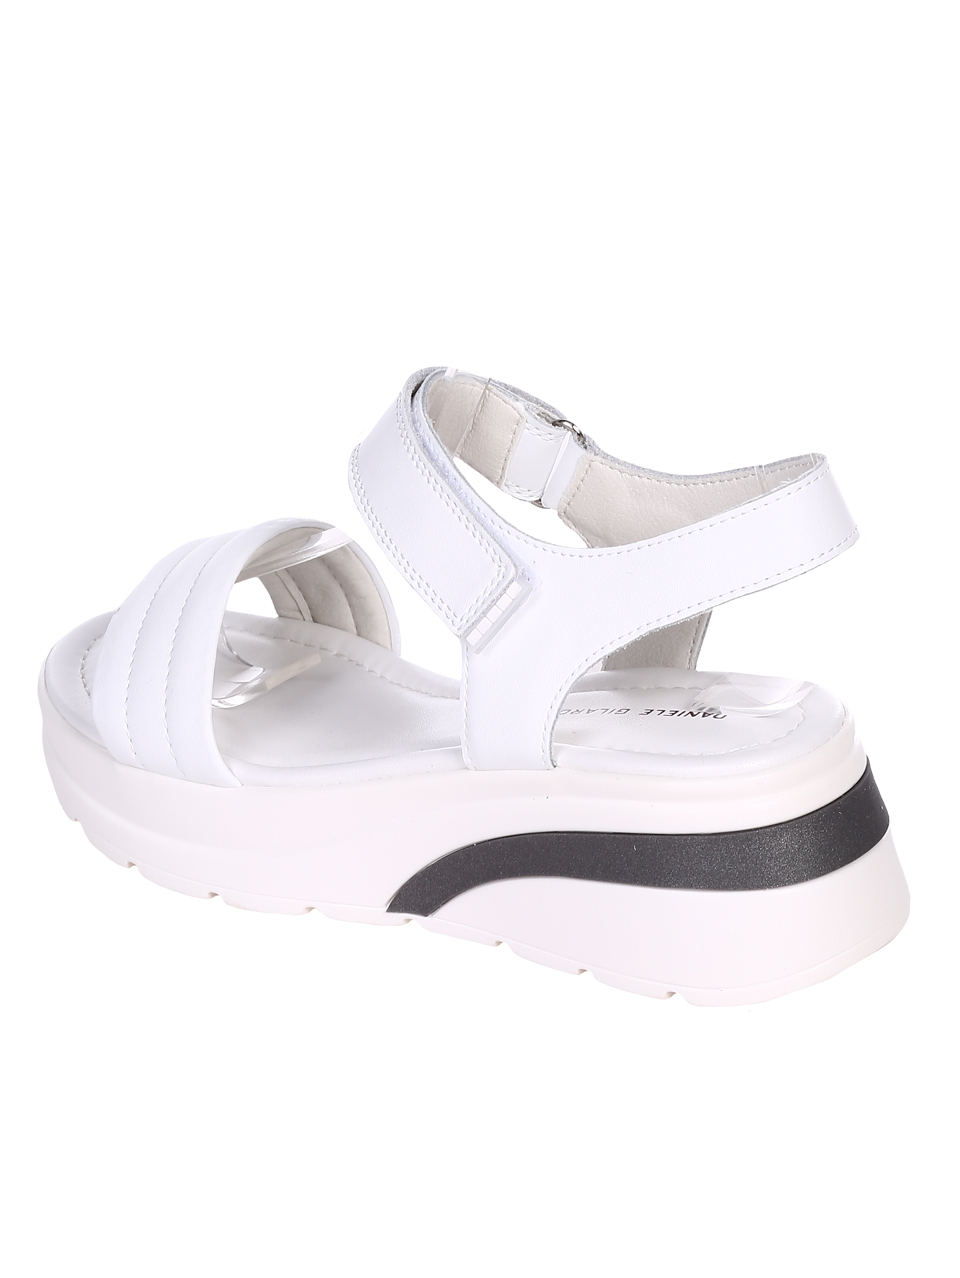 Ежедневни дамски сандали на платформа от естествена кожа 4AF-22187 white